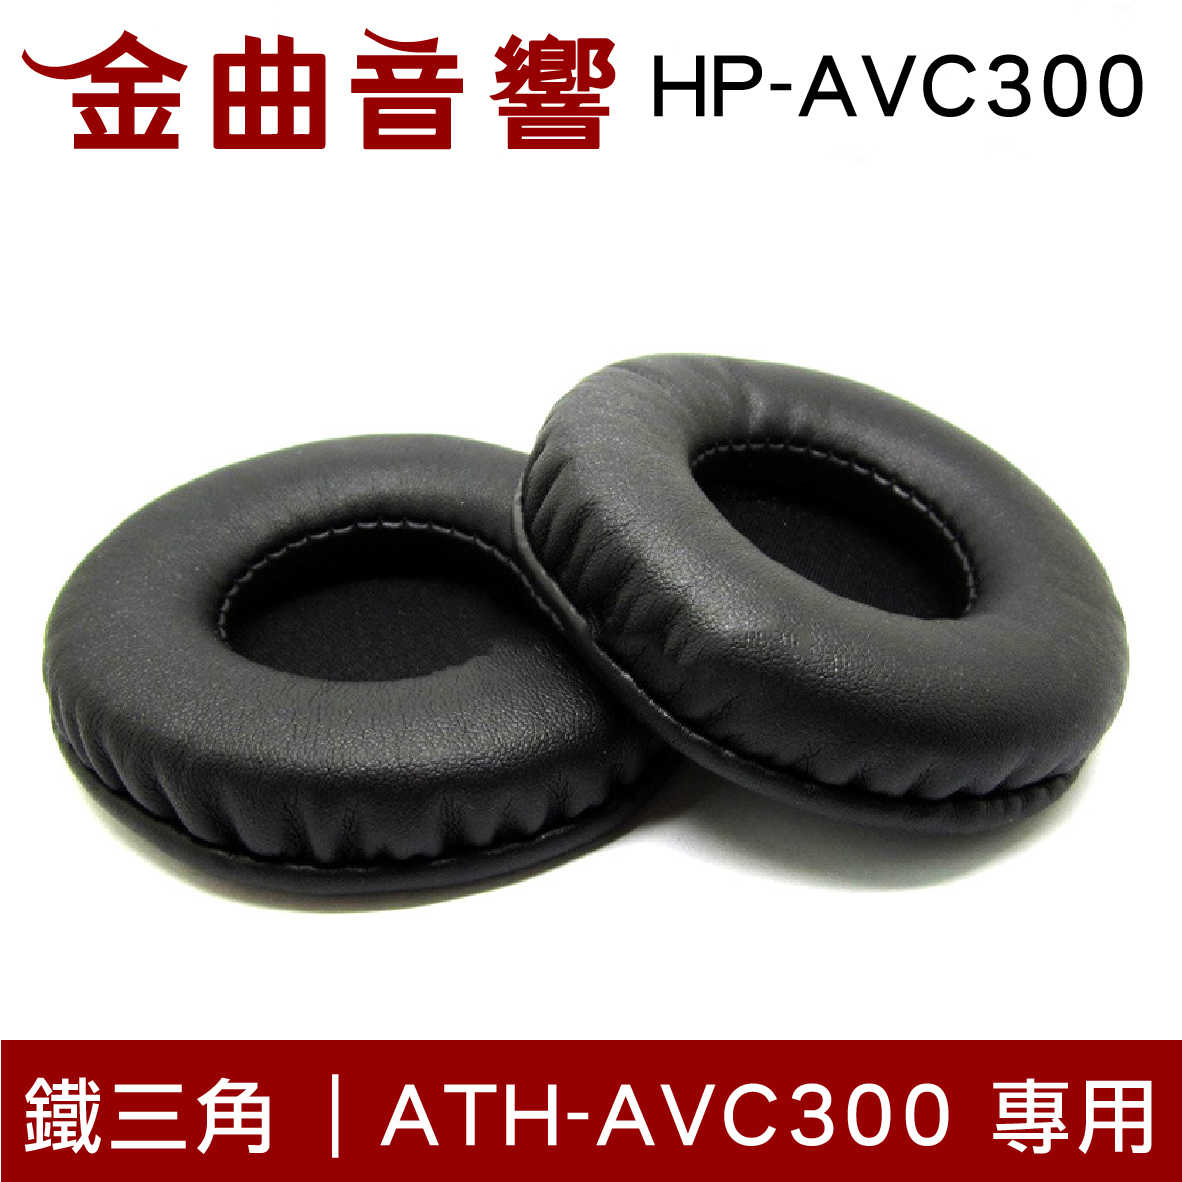 Audio-Technica 鐵三角 ATH-AVC300 專用 原廠替換耳罩 HP-AVC300 | 金曲音響